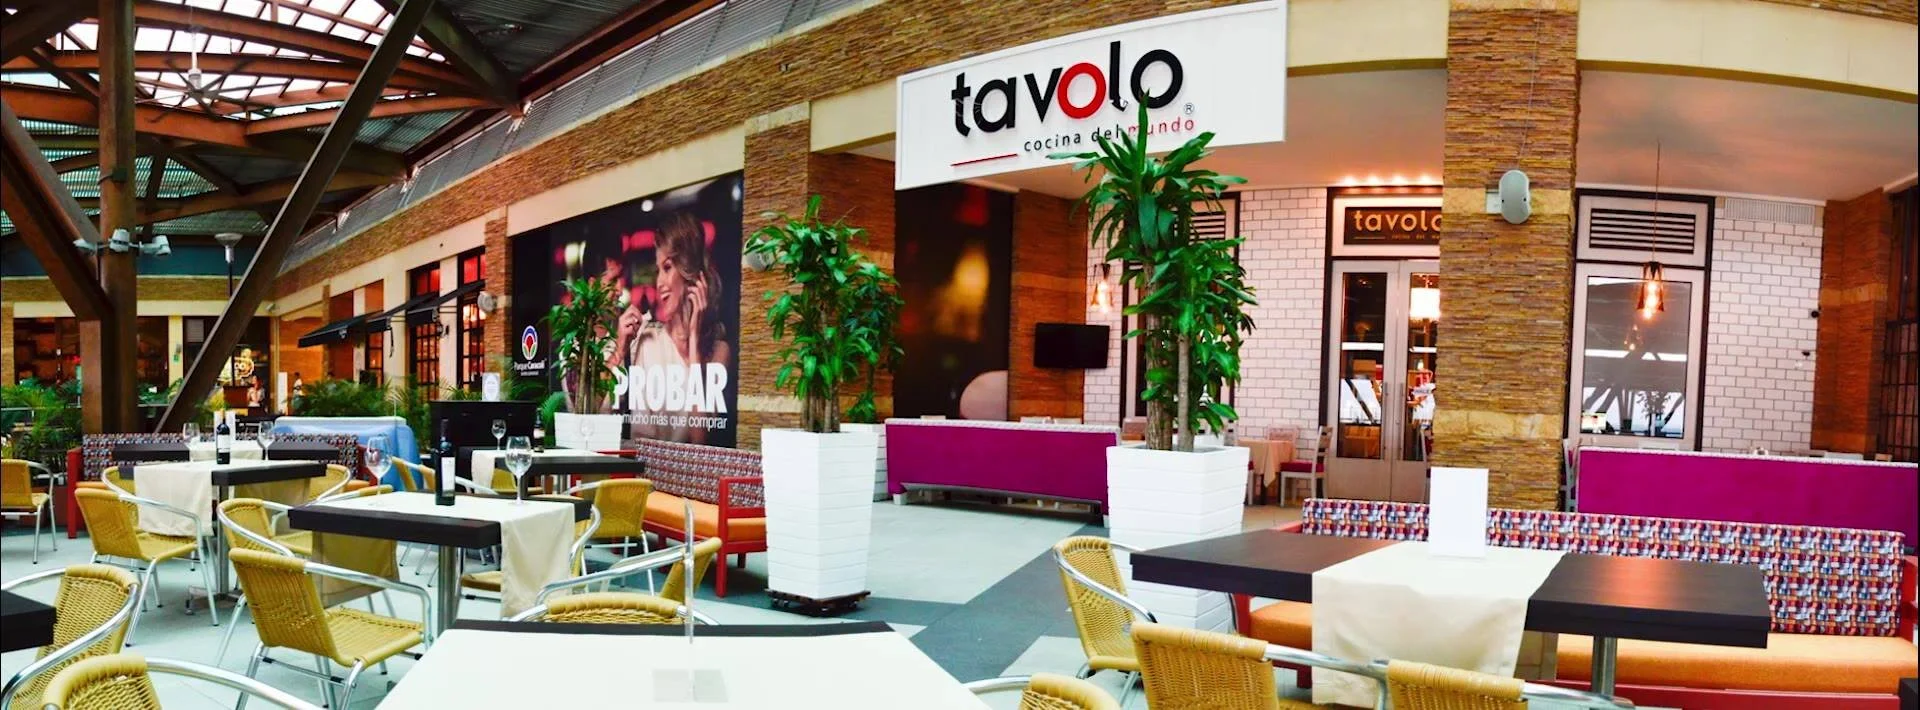 Restaurante-tavolo-gourmet-restaurante-en-bucaramanga-24654